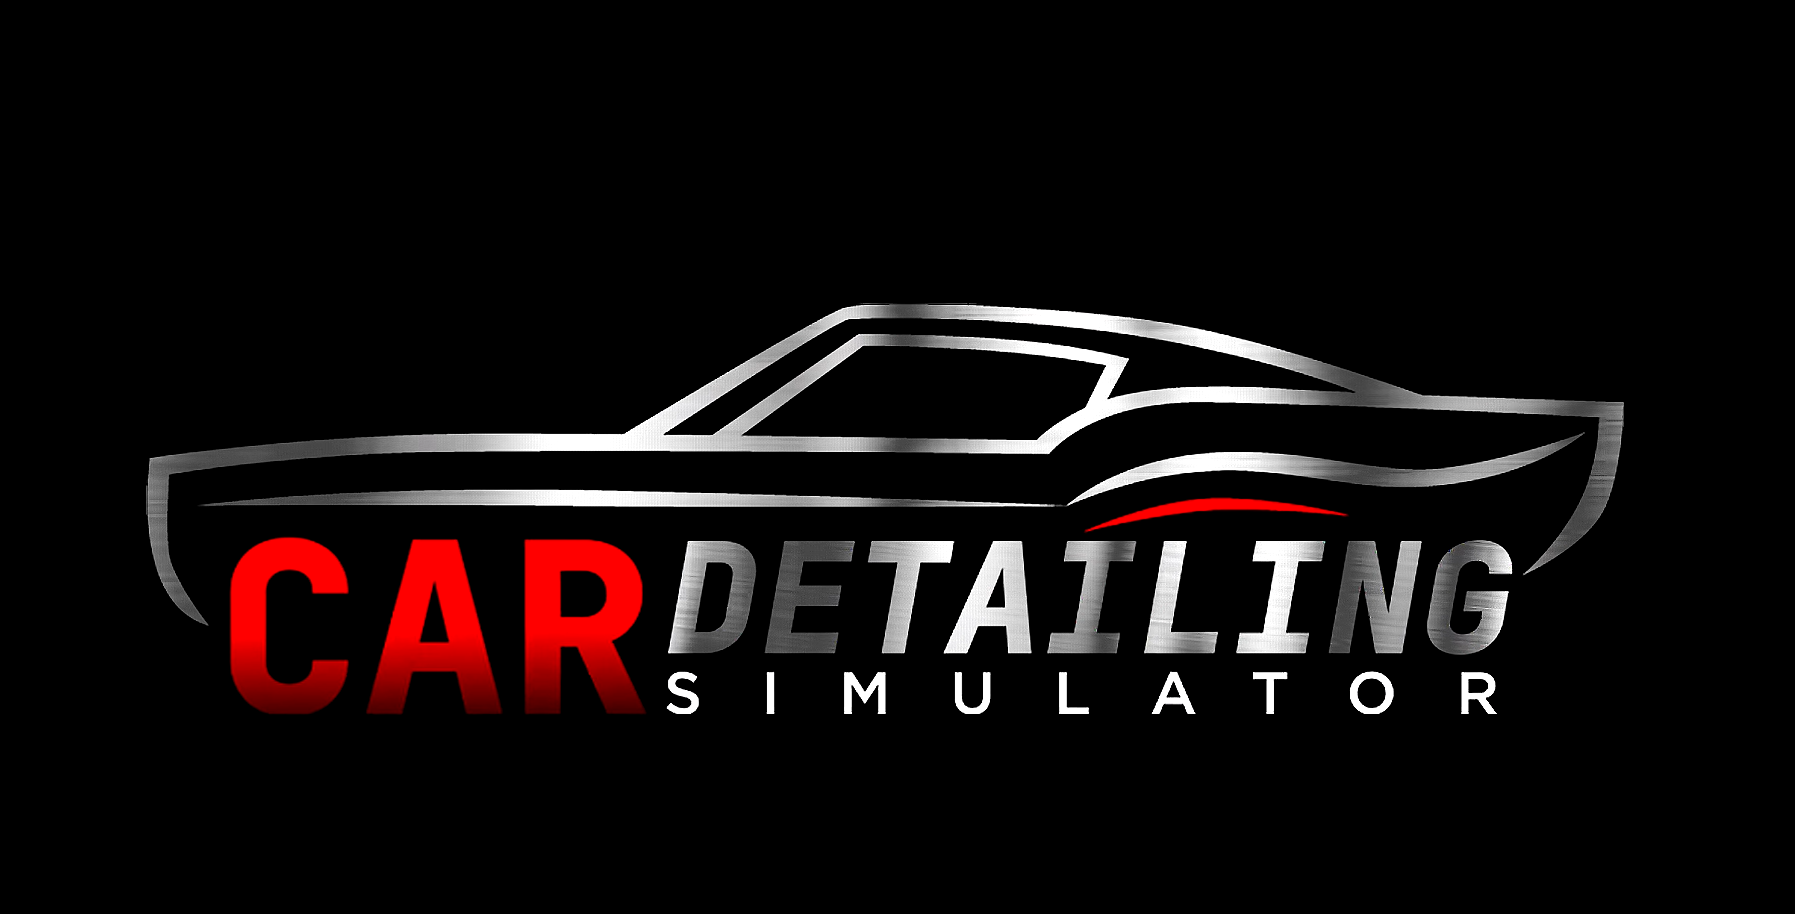 Detailing simulator